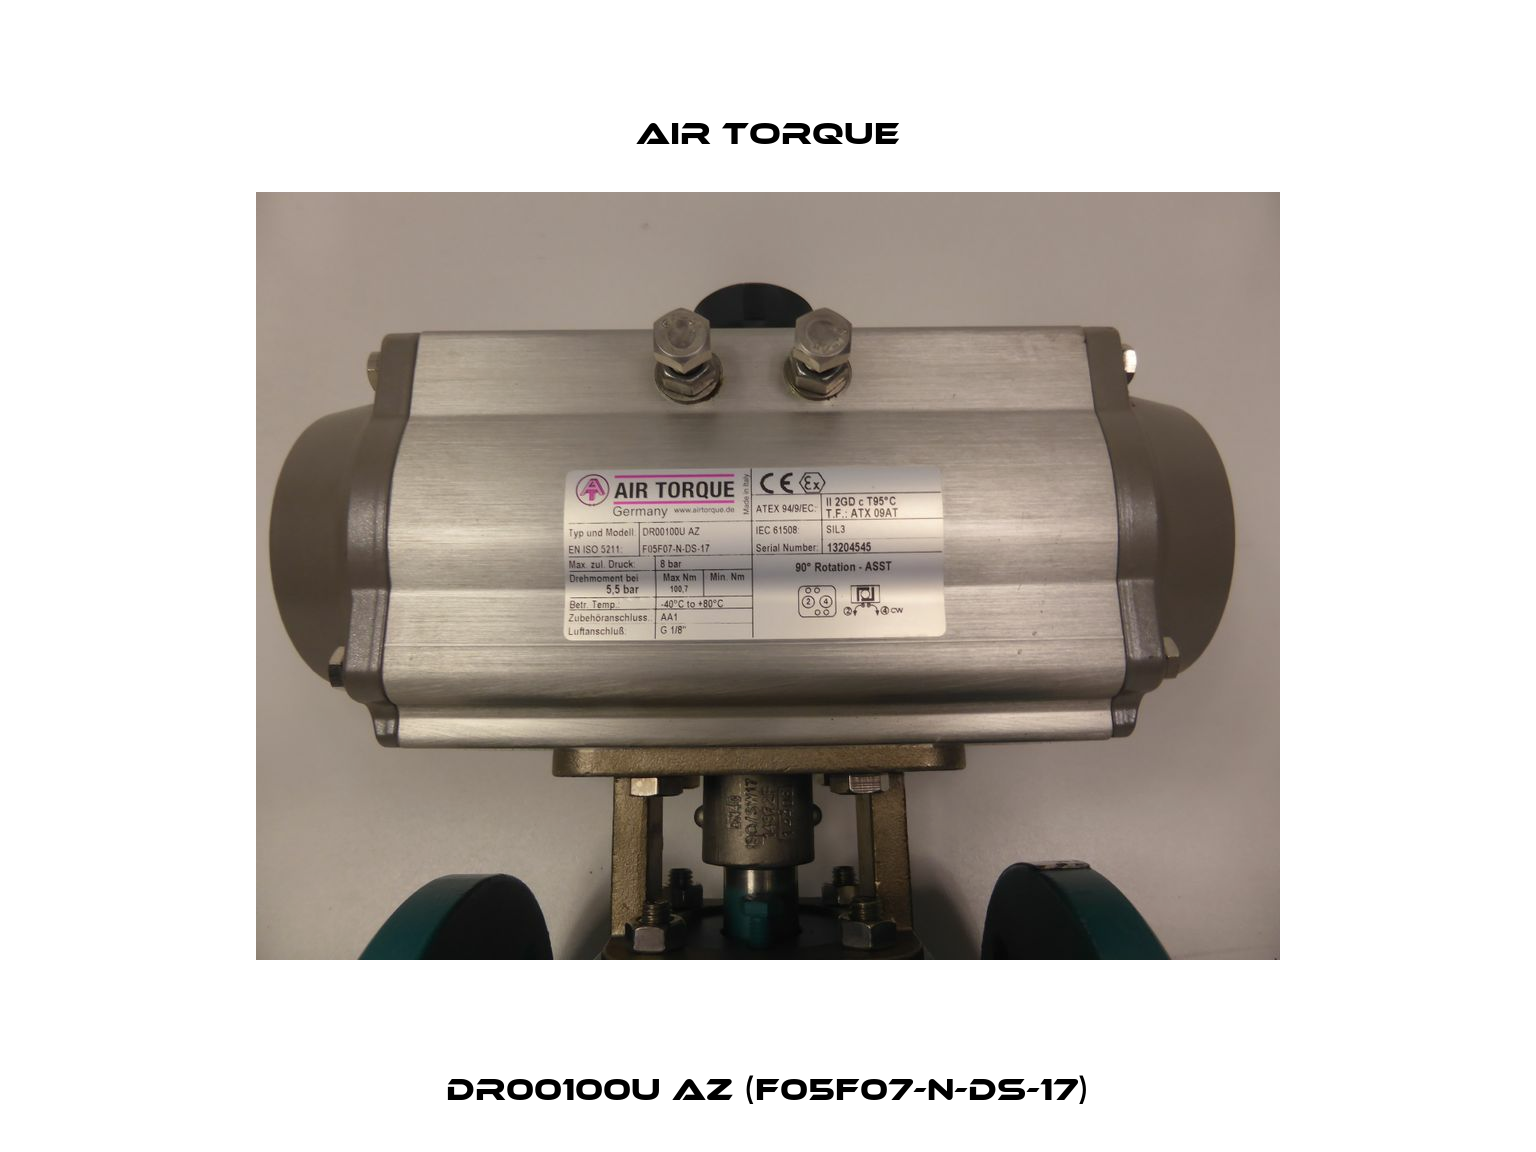 DR00100U AZ (F05F07-N-DS-17) Air Torque